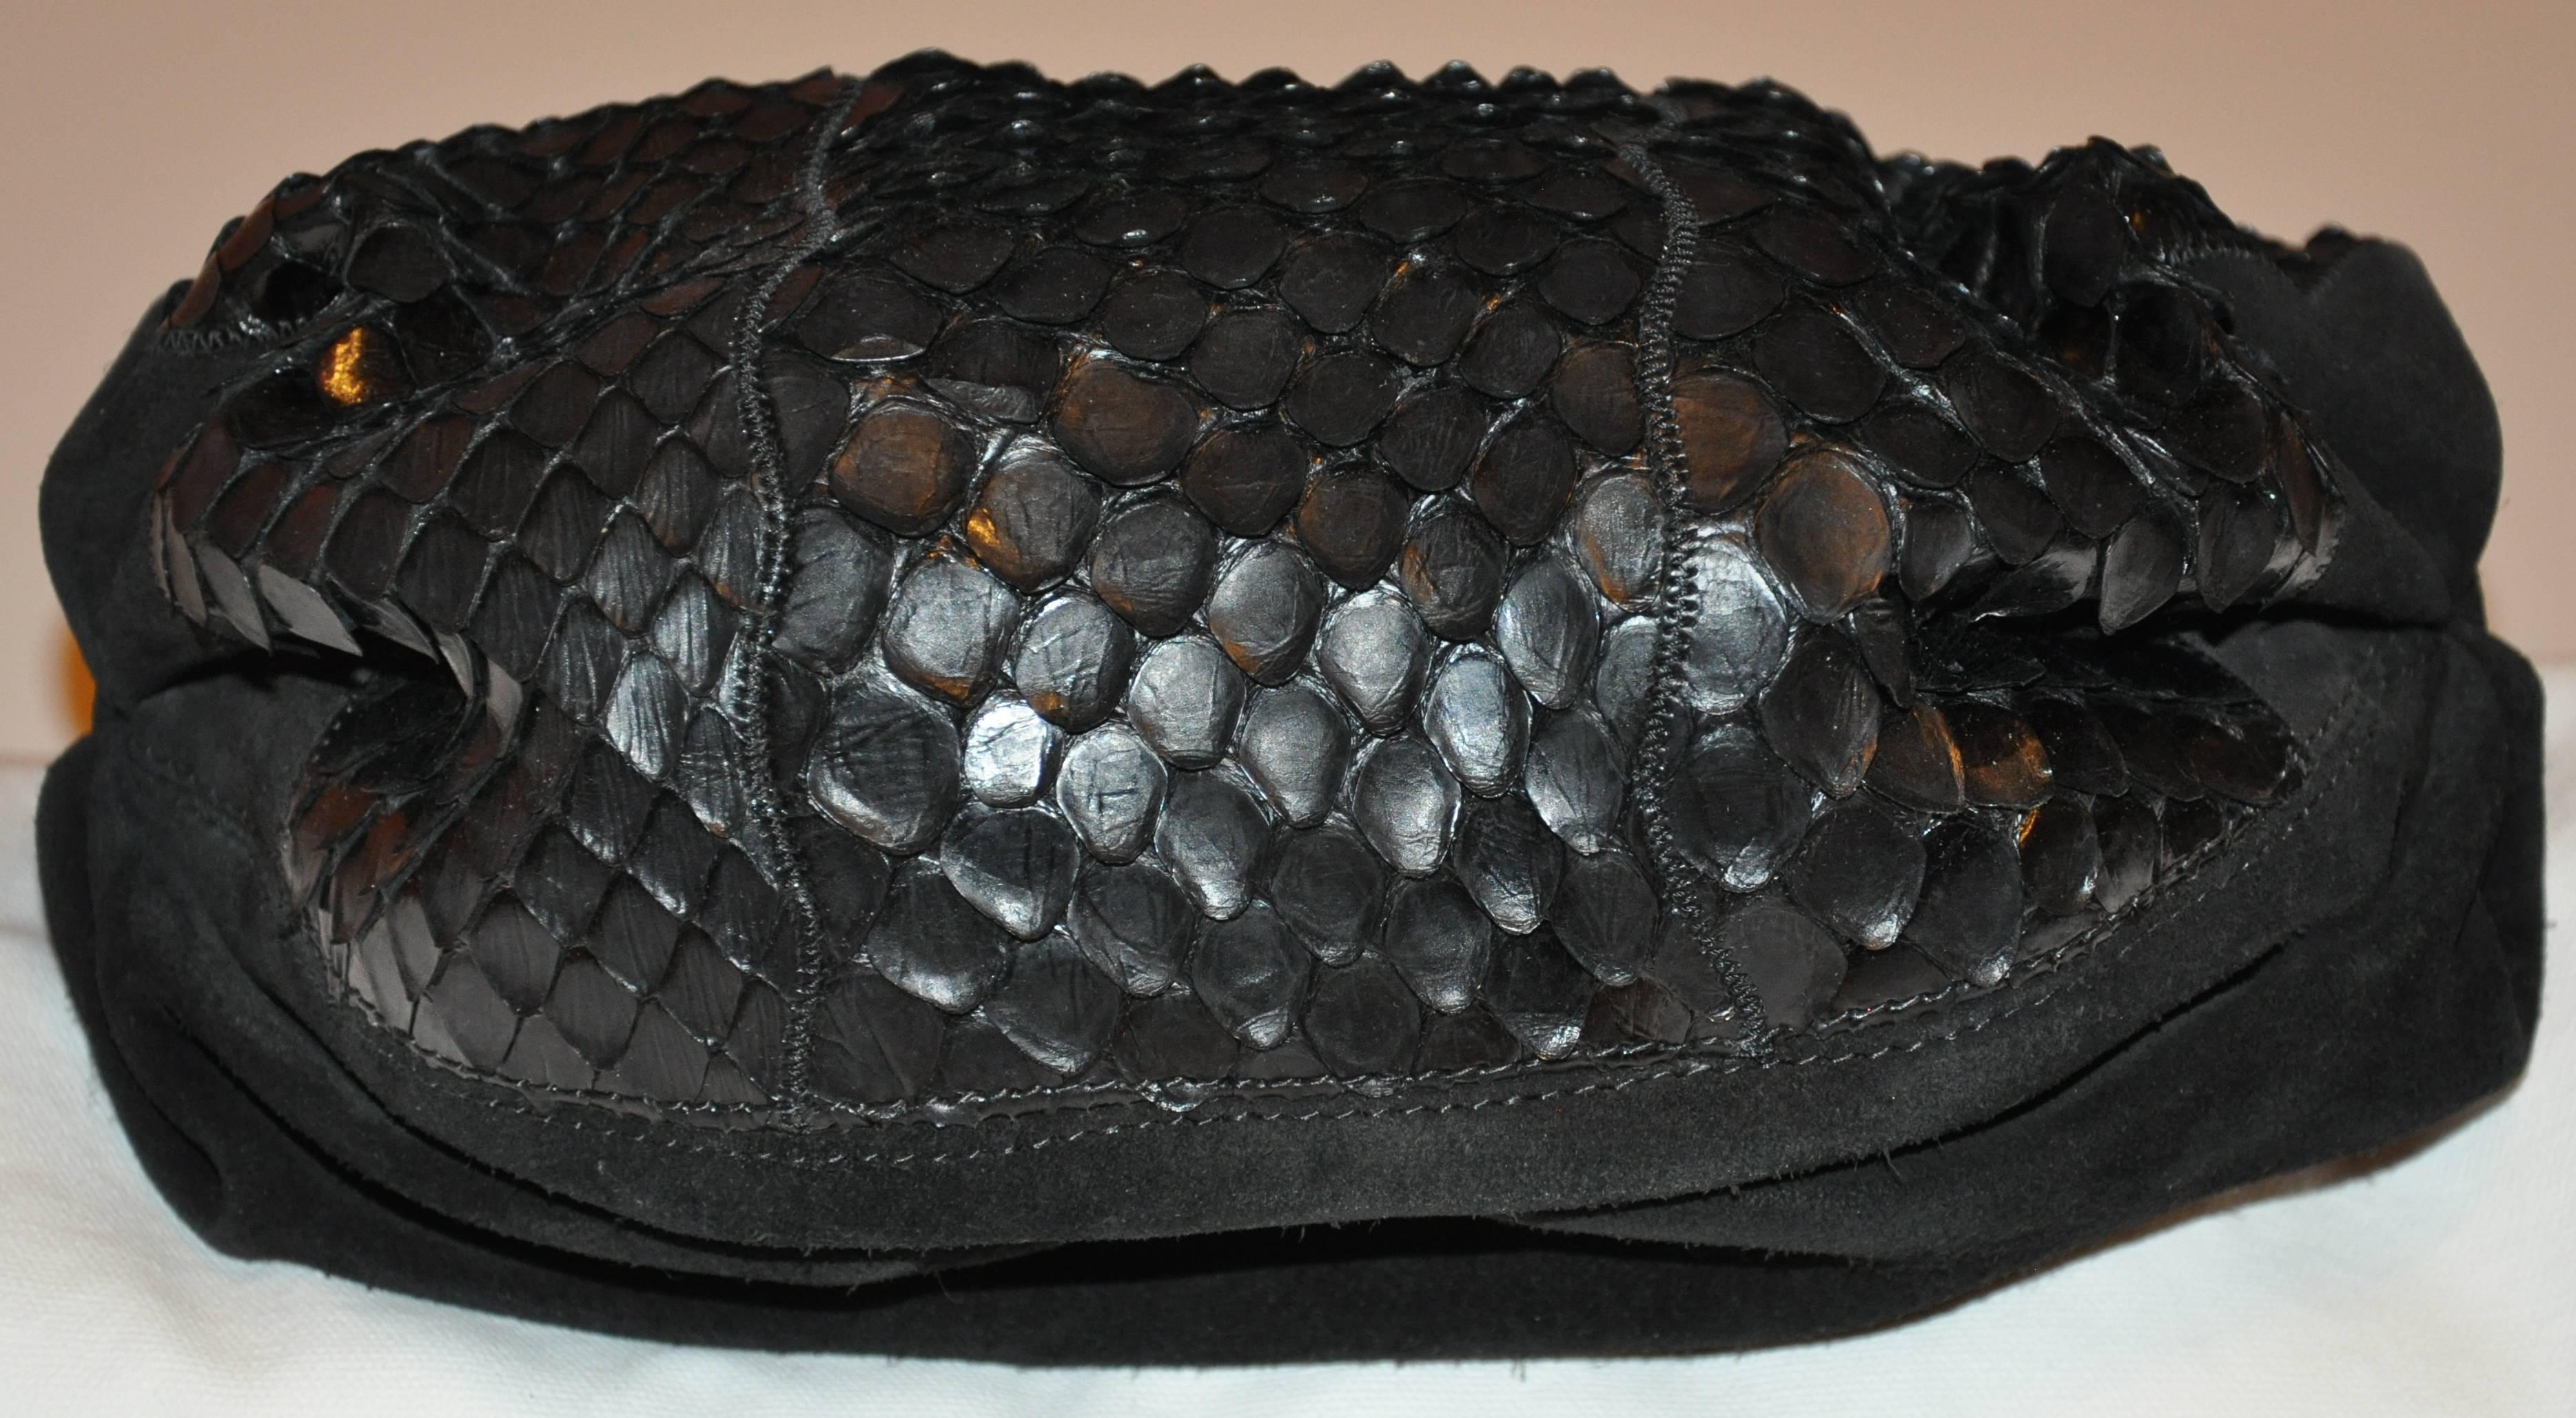 carlos falchi snakeskin handbag